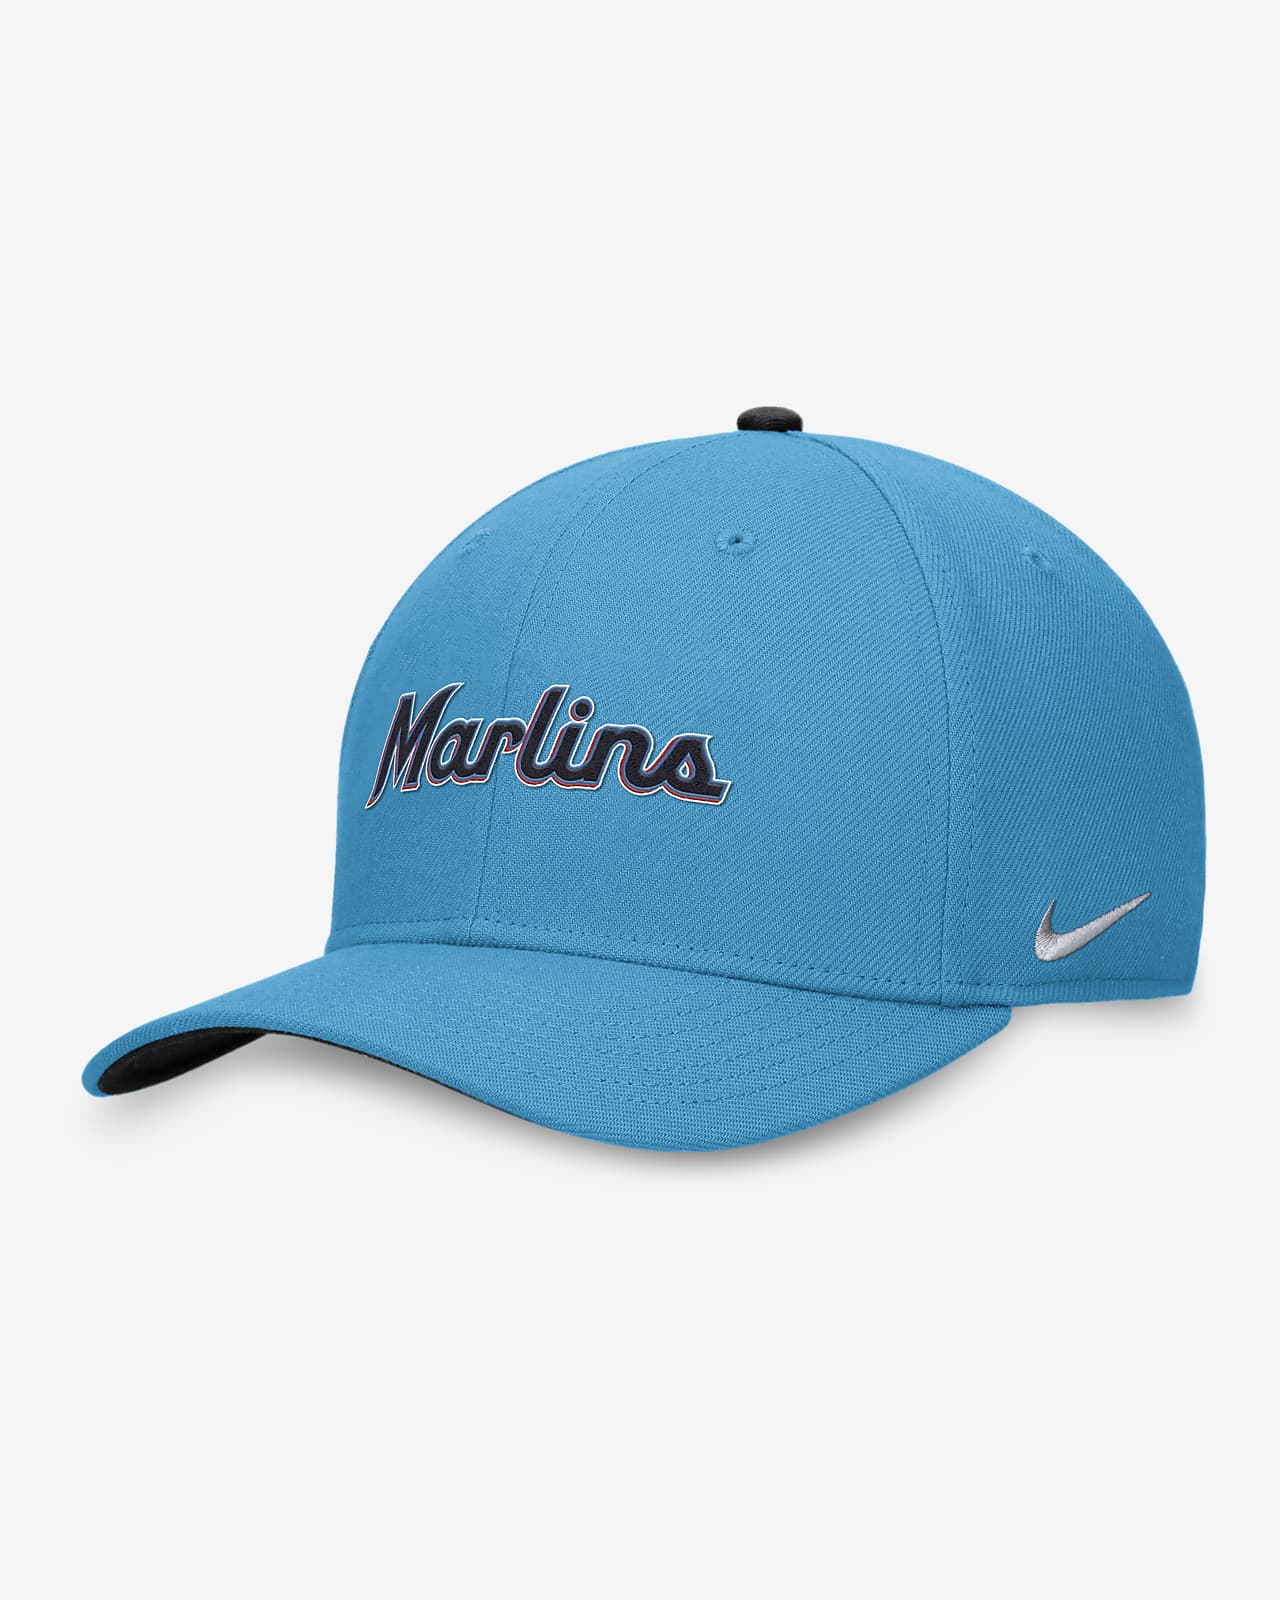 Nike Miami Marlins MLB Fan Shop